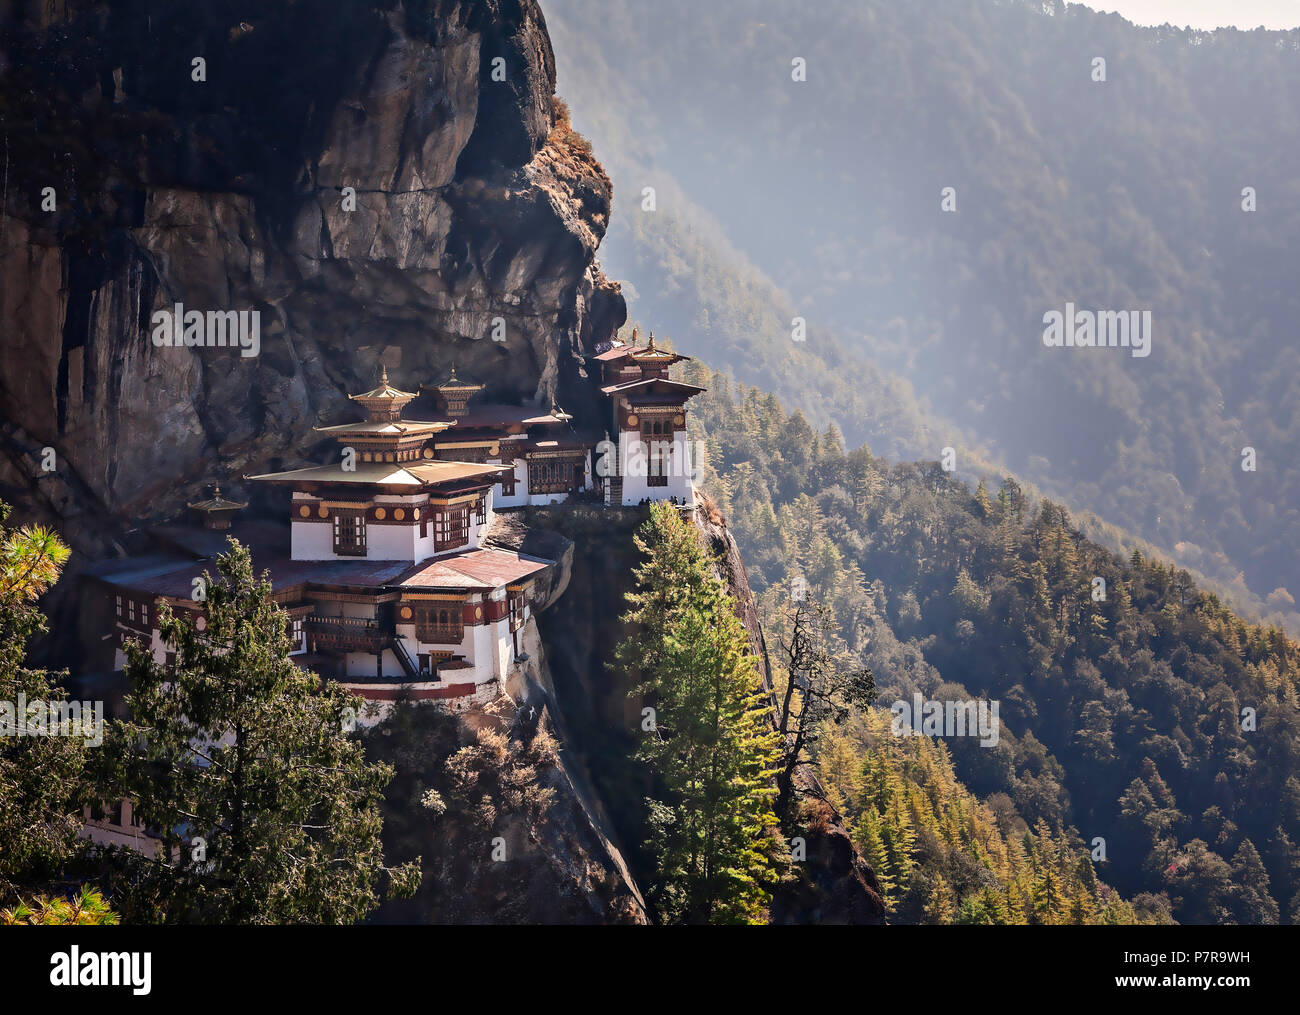 Taktsang Palphug monastero o le tigri Nest vicino a paro Bhutan era originariamente constructued nel 1692 ed è considerato un luogo sacro. Foto Stock